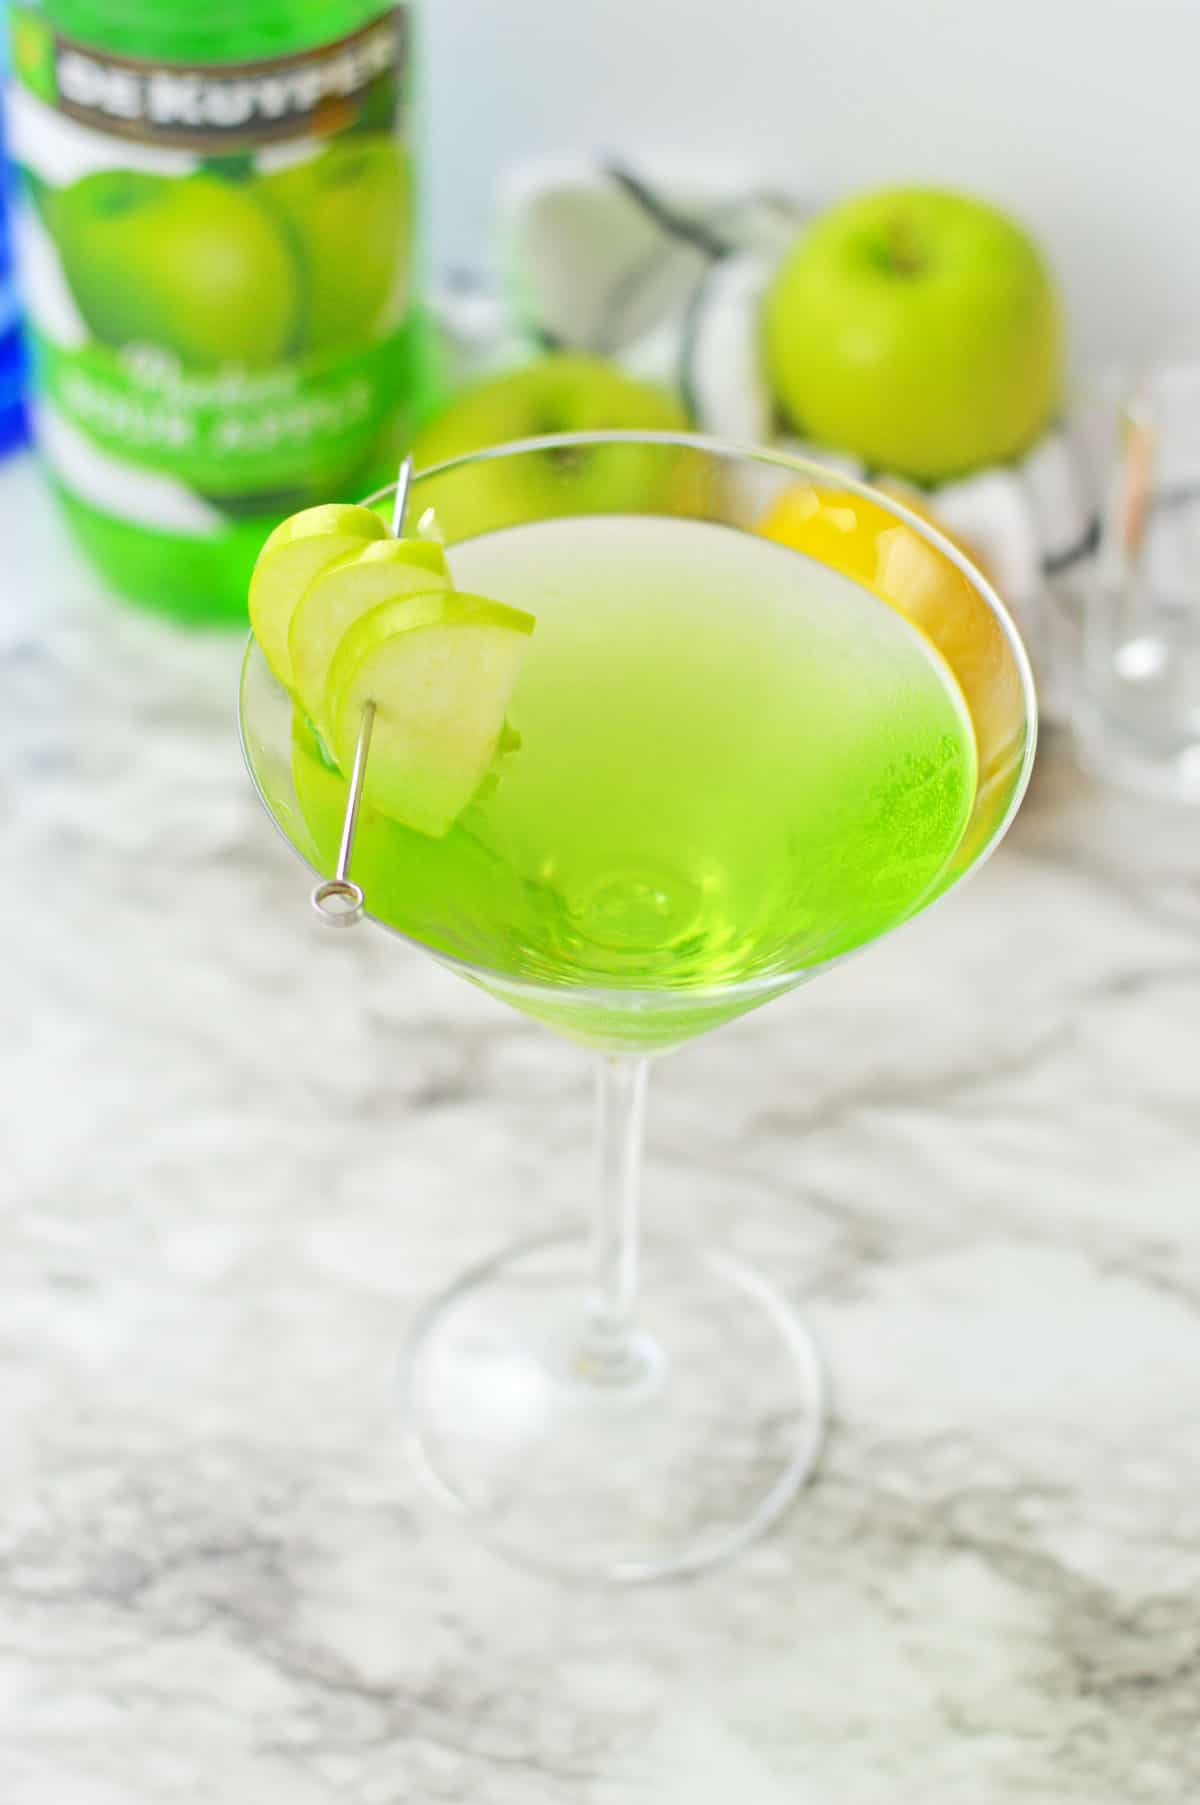 Green apple martini in a martini glass.